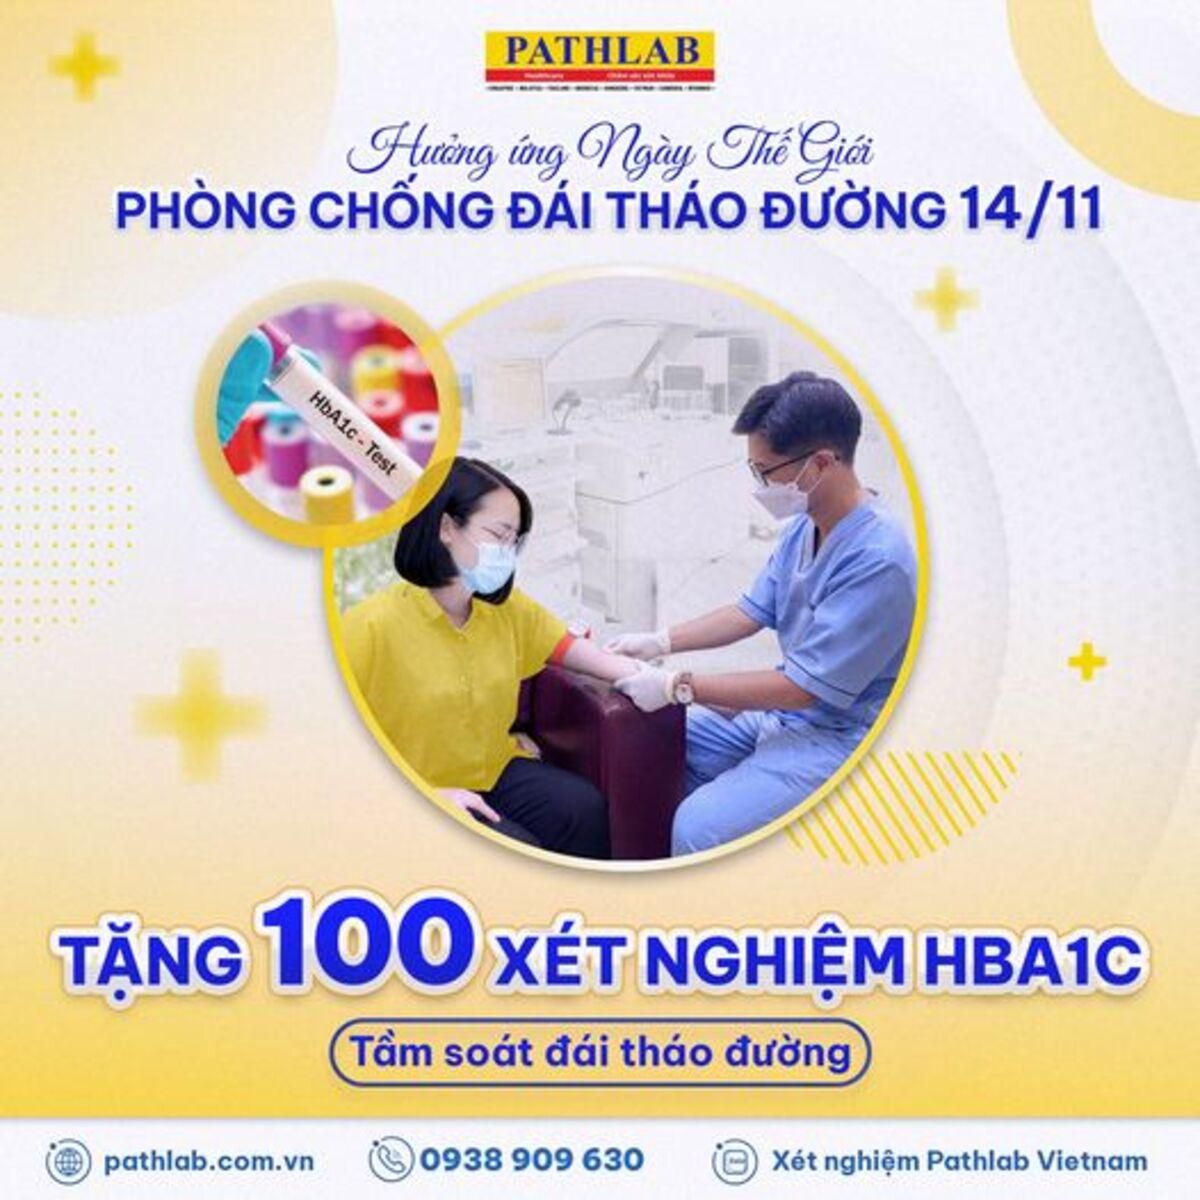 Pathlab Việt Nam tặng 100 xét nghiệm HBA1C nhân ngày Phòng chống đái tháo đường 14/11